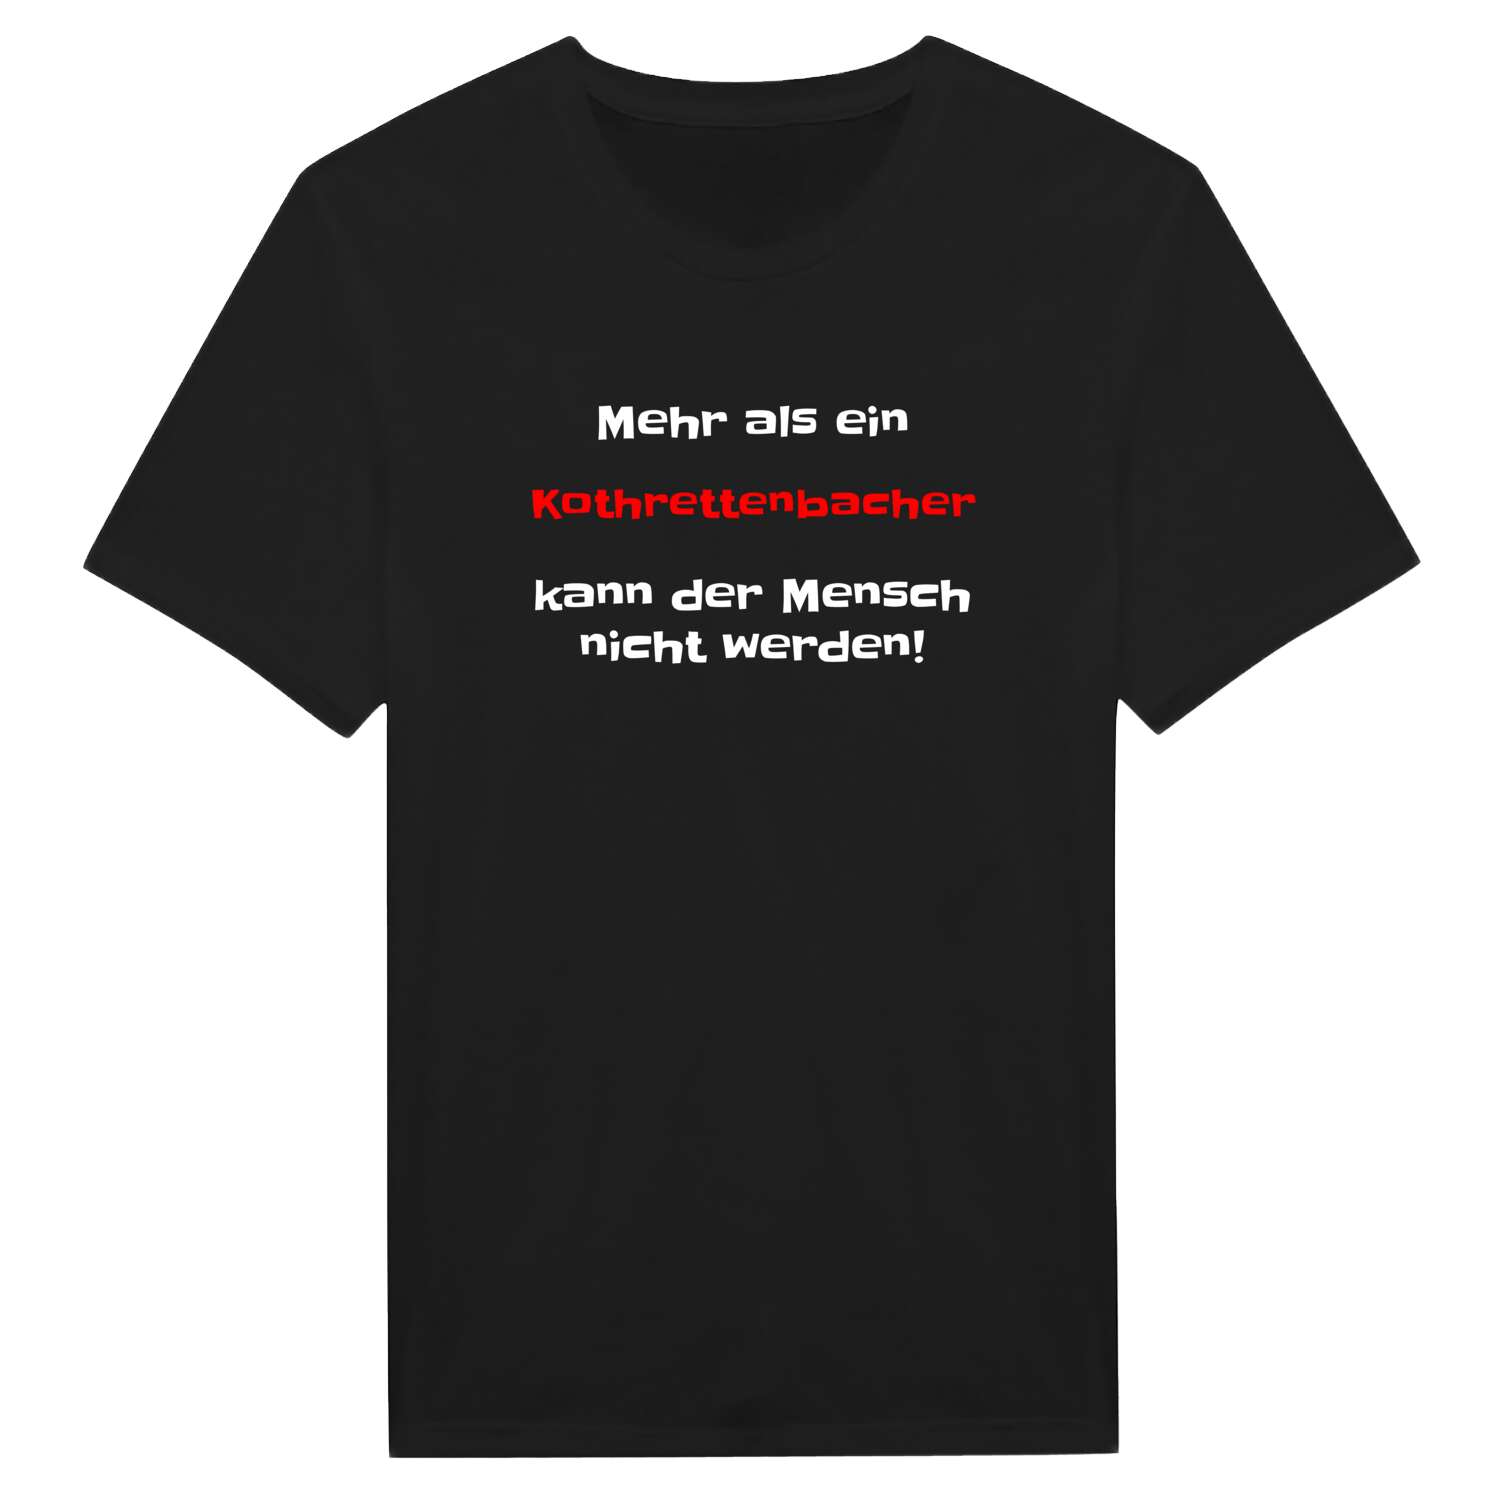 Kothrettenbach T-Shirt »Mehr als ein«